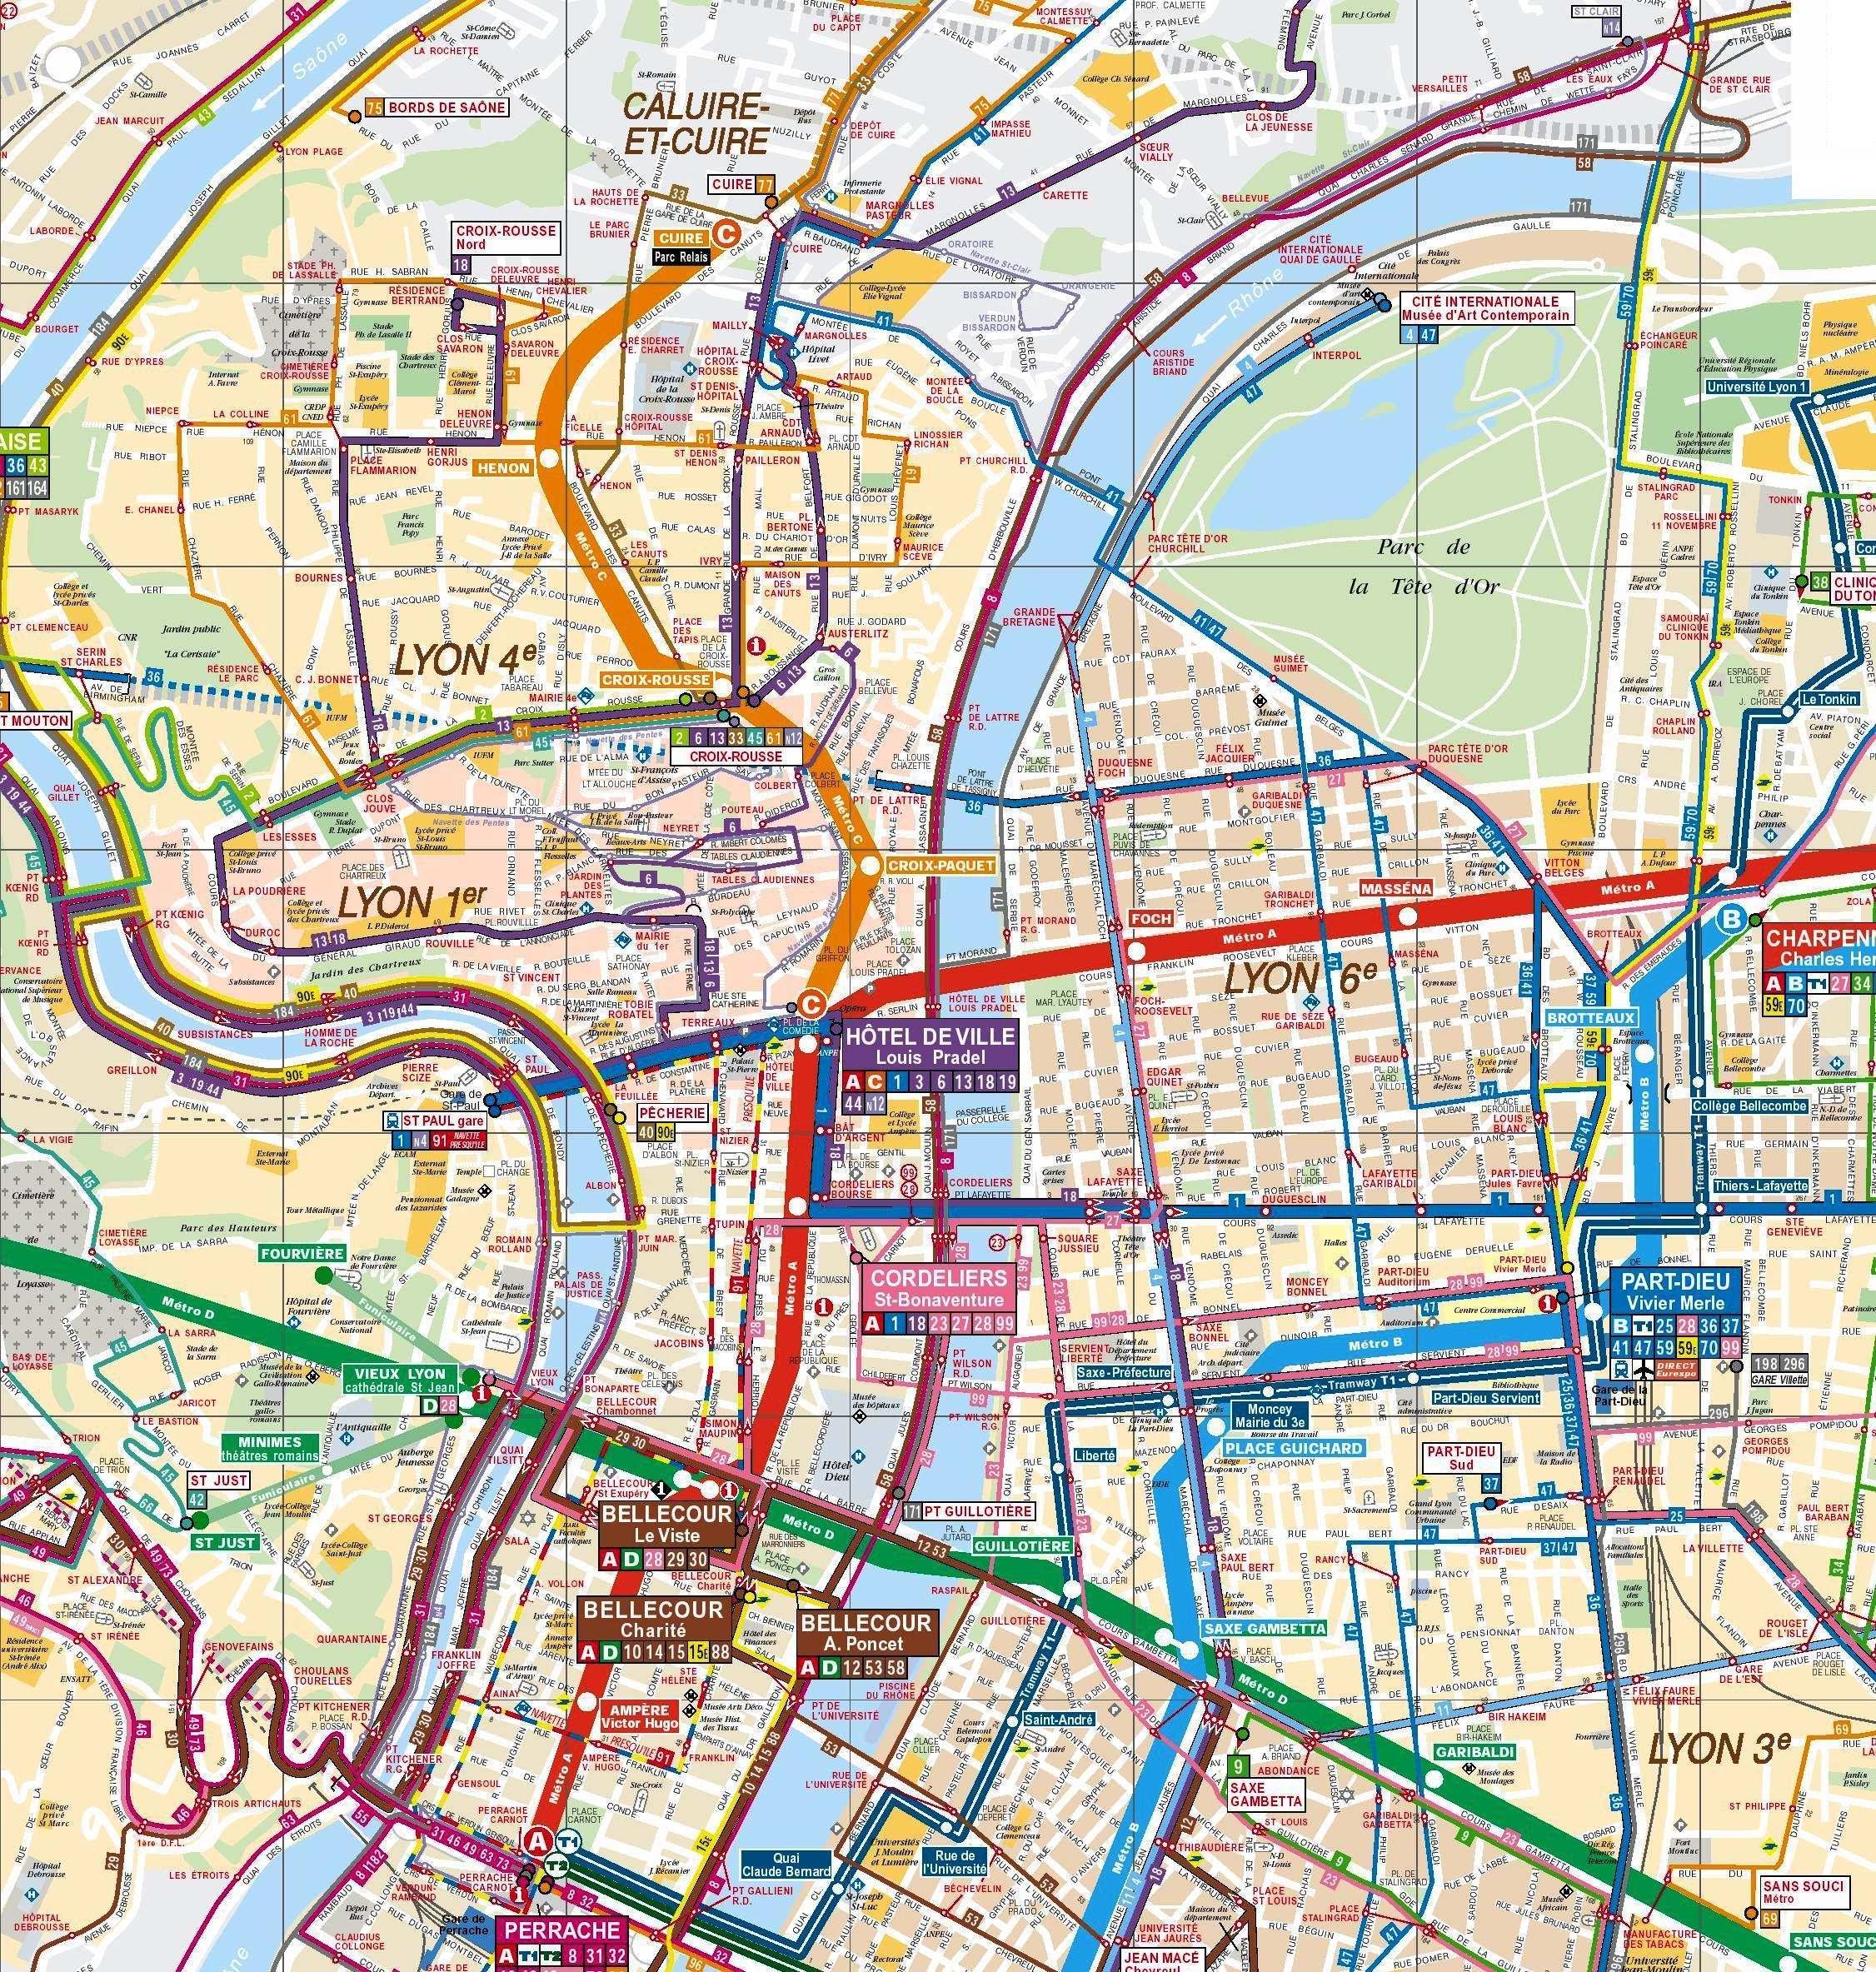 Автобусы в Лионе - карта автобусных маршрутов по городу Лиона